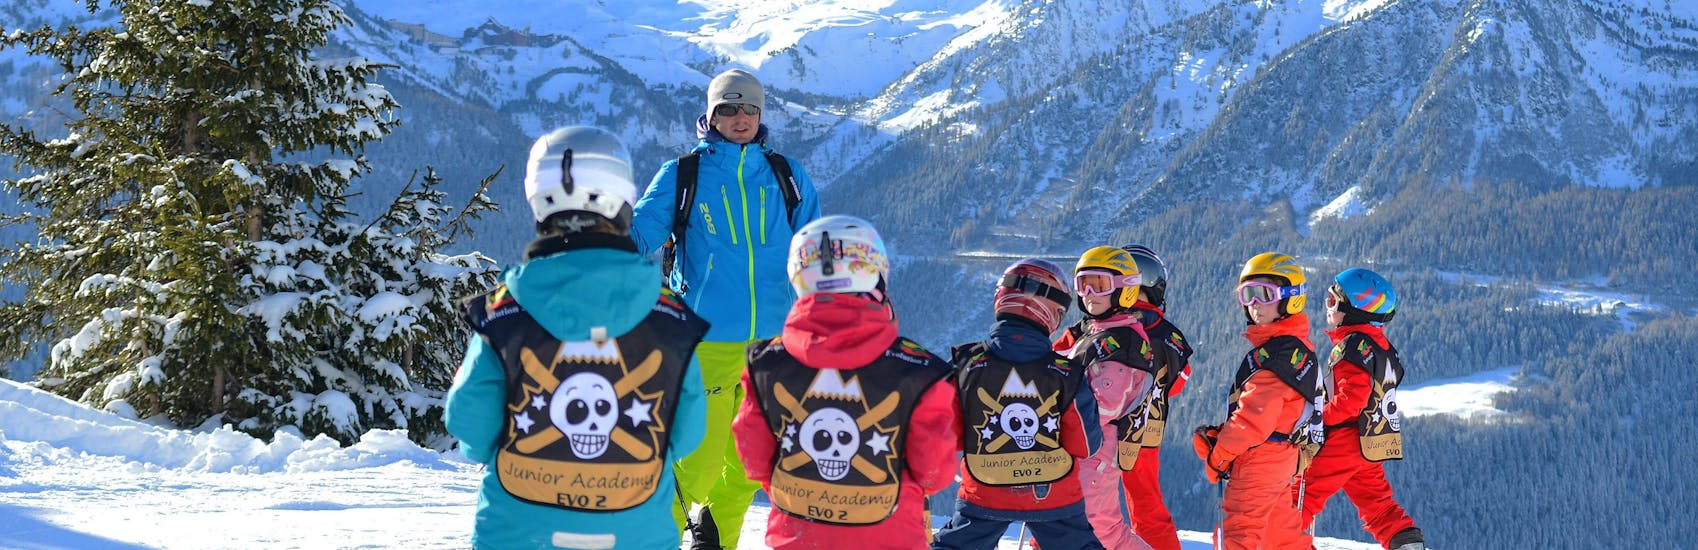 Kleine kinderen doen skilessen voor kinderen (4-5 jaar) voor beginners met Evolution 2 La Clusaz.